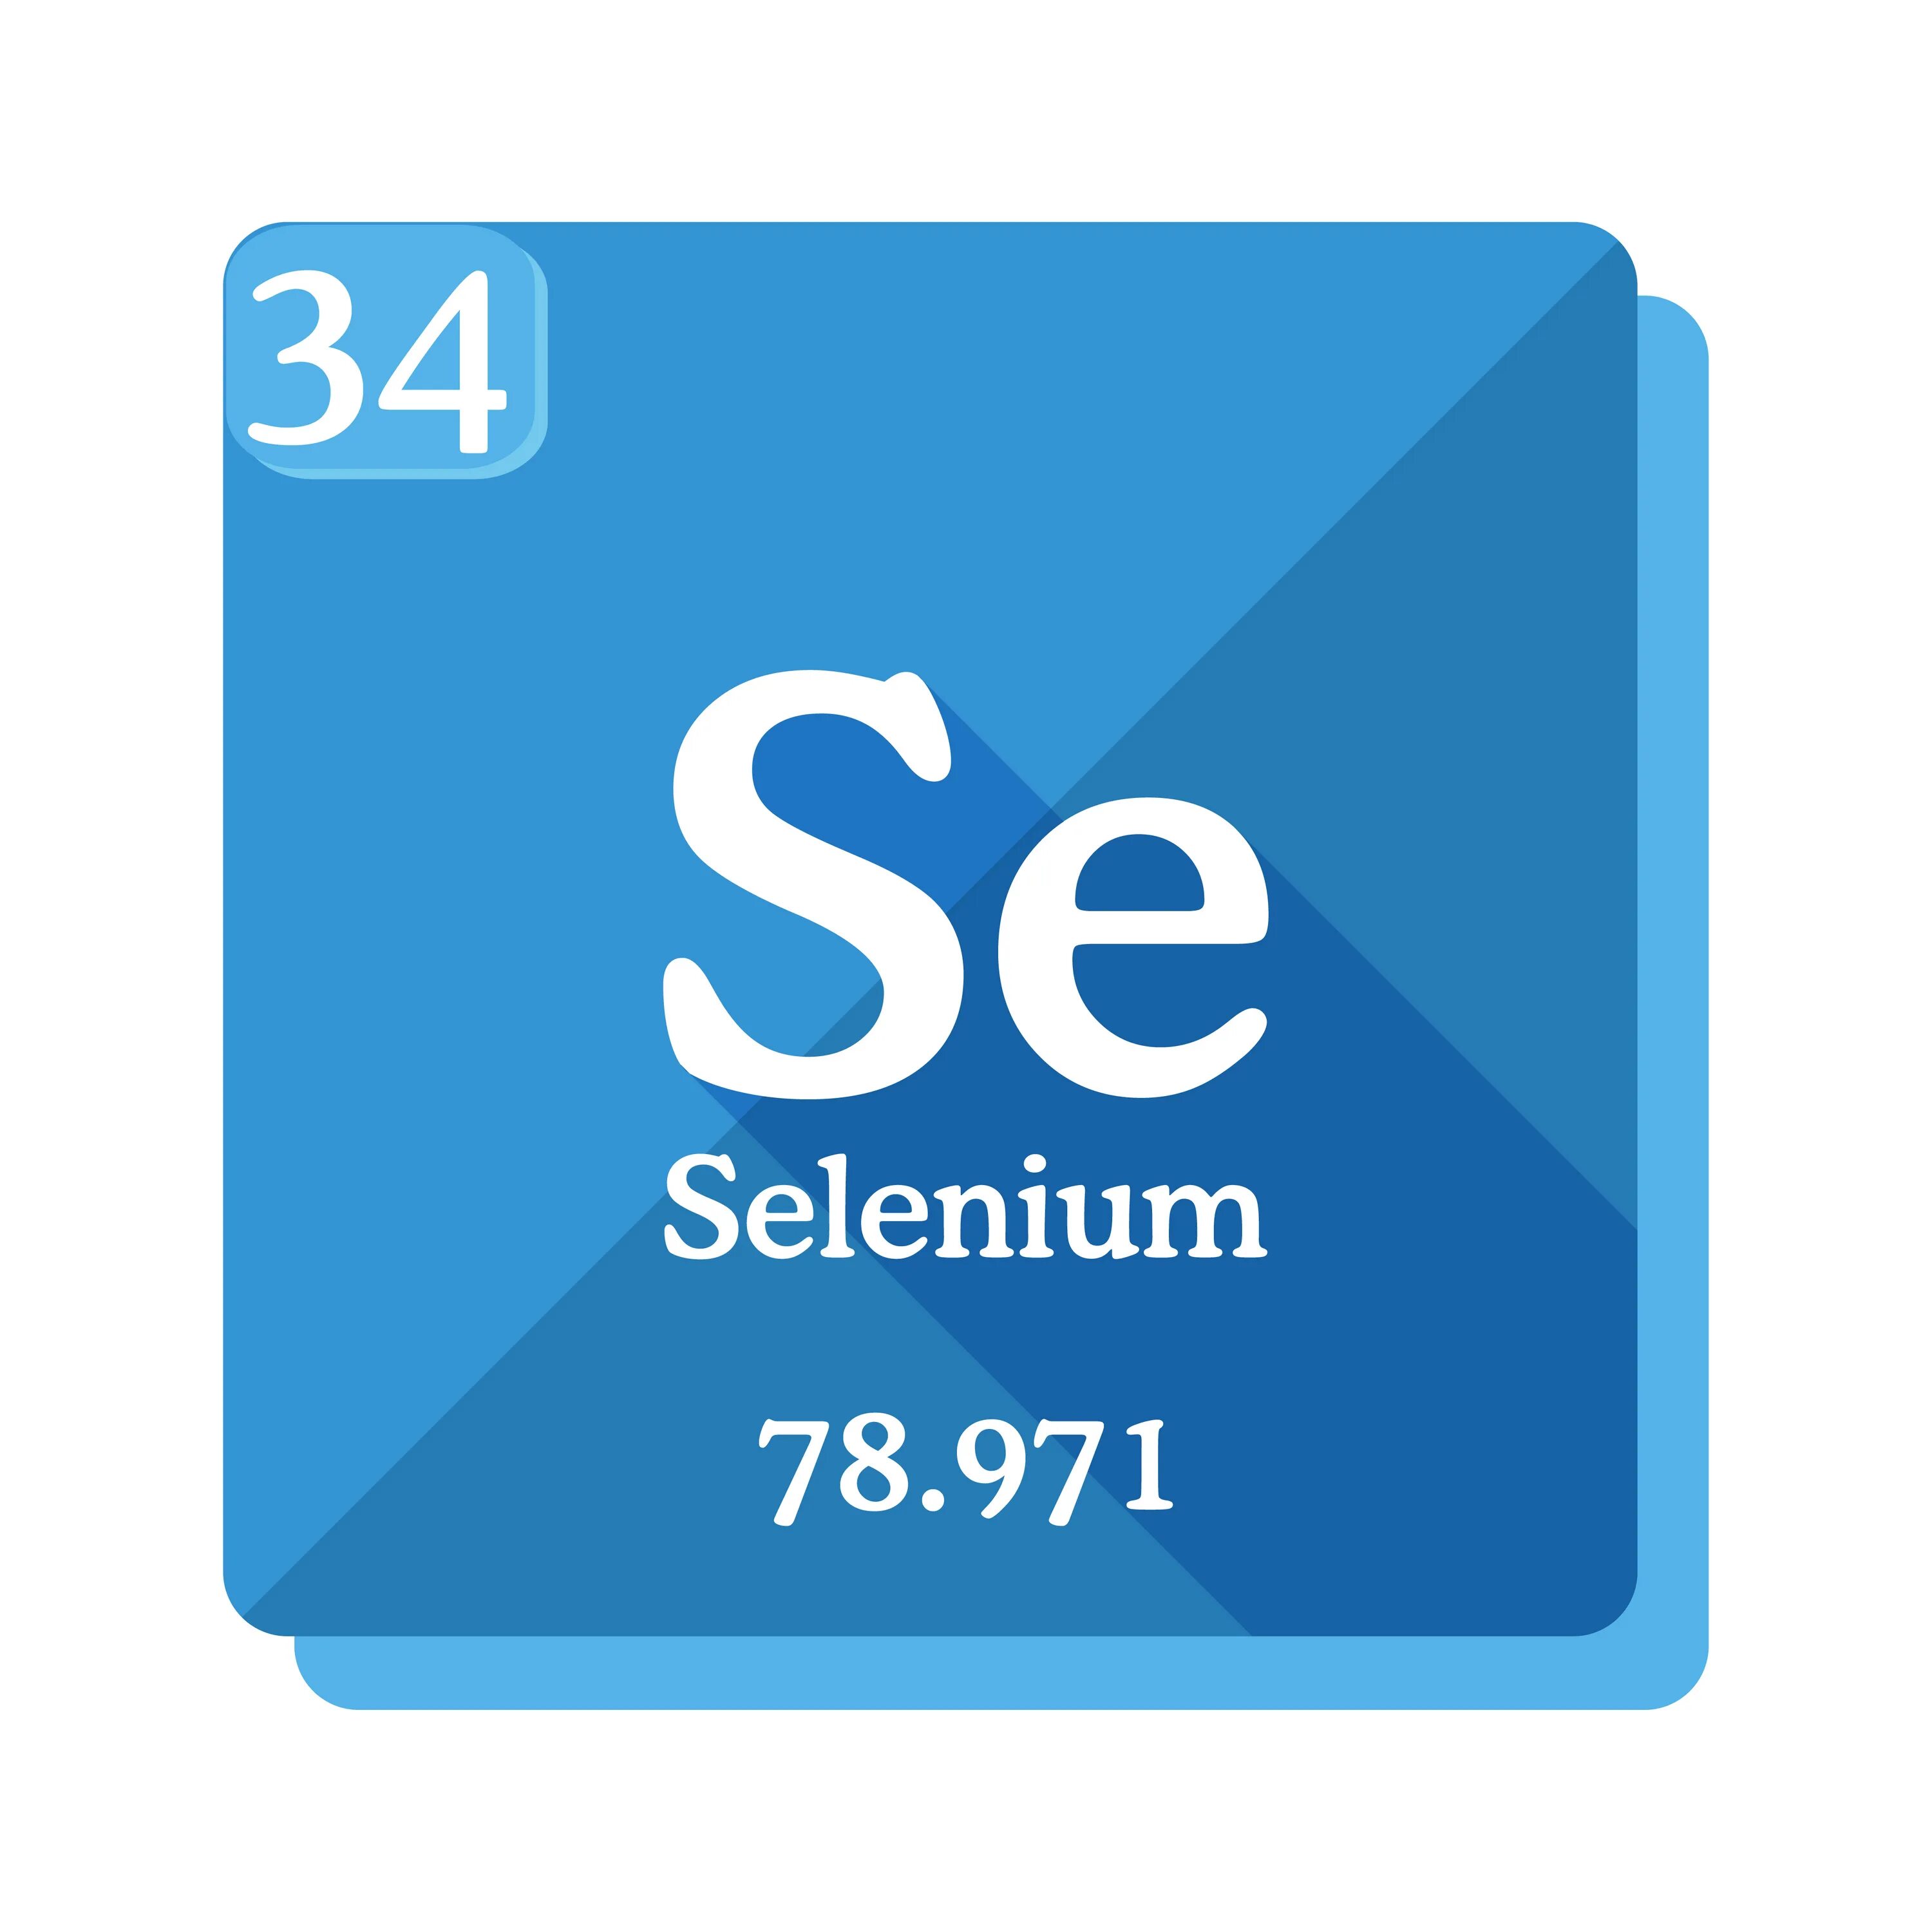 Sb элемент. SC элемент. Химические элементы Антимоний. Олово SN как читается.